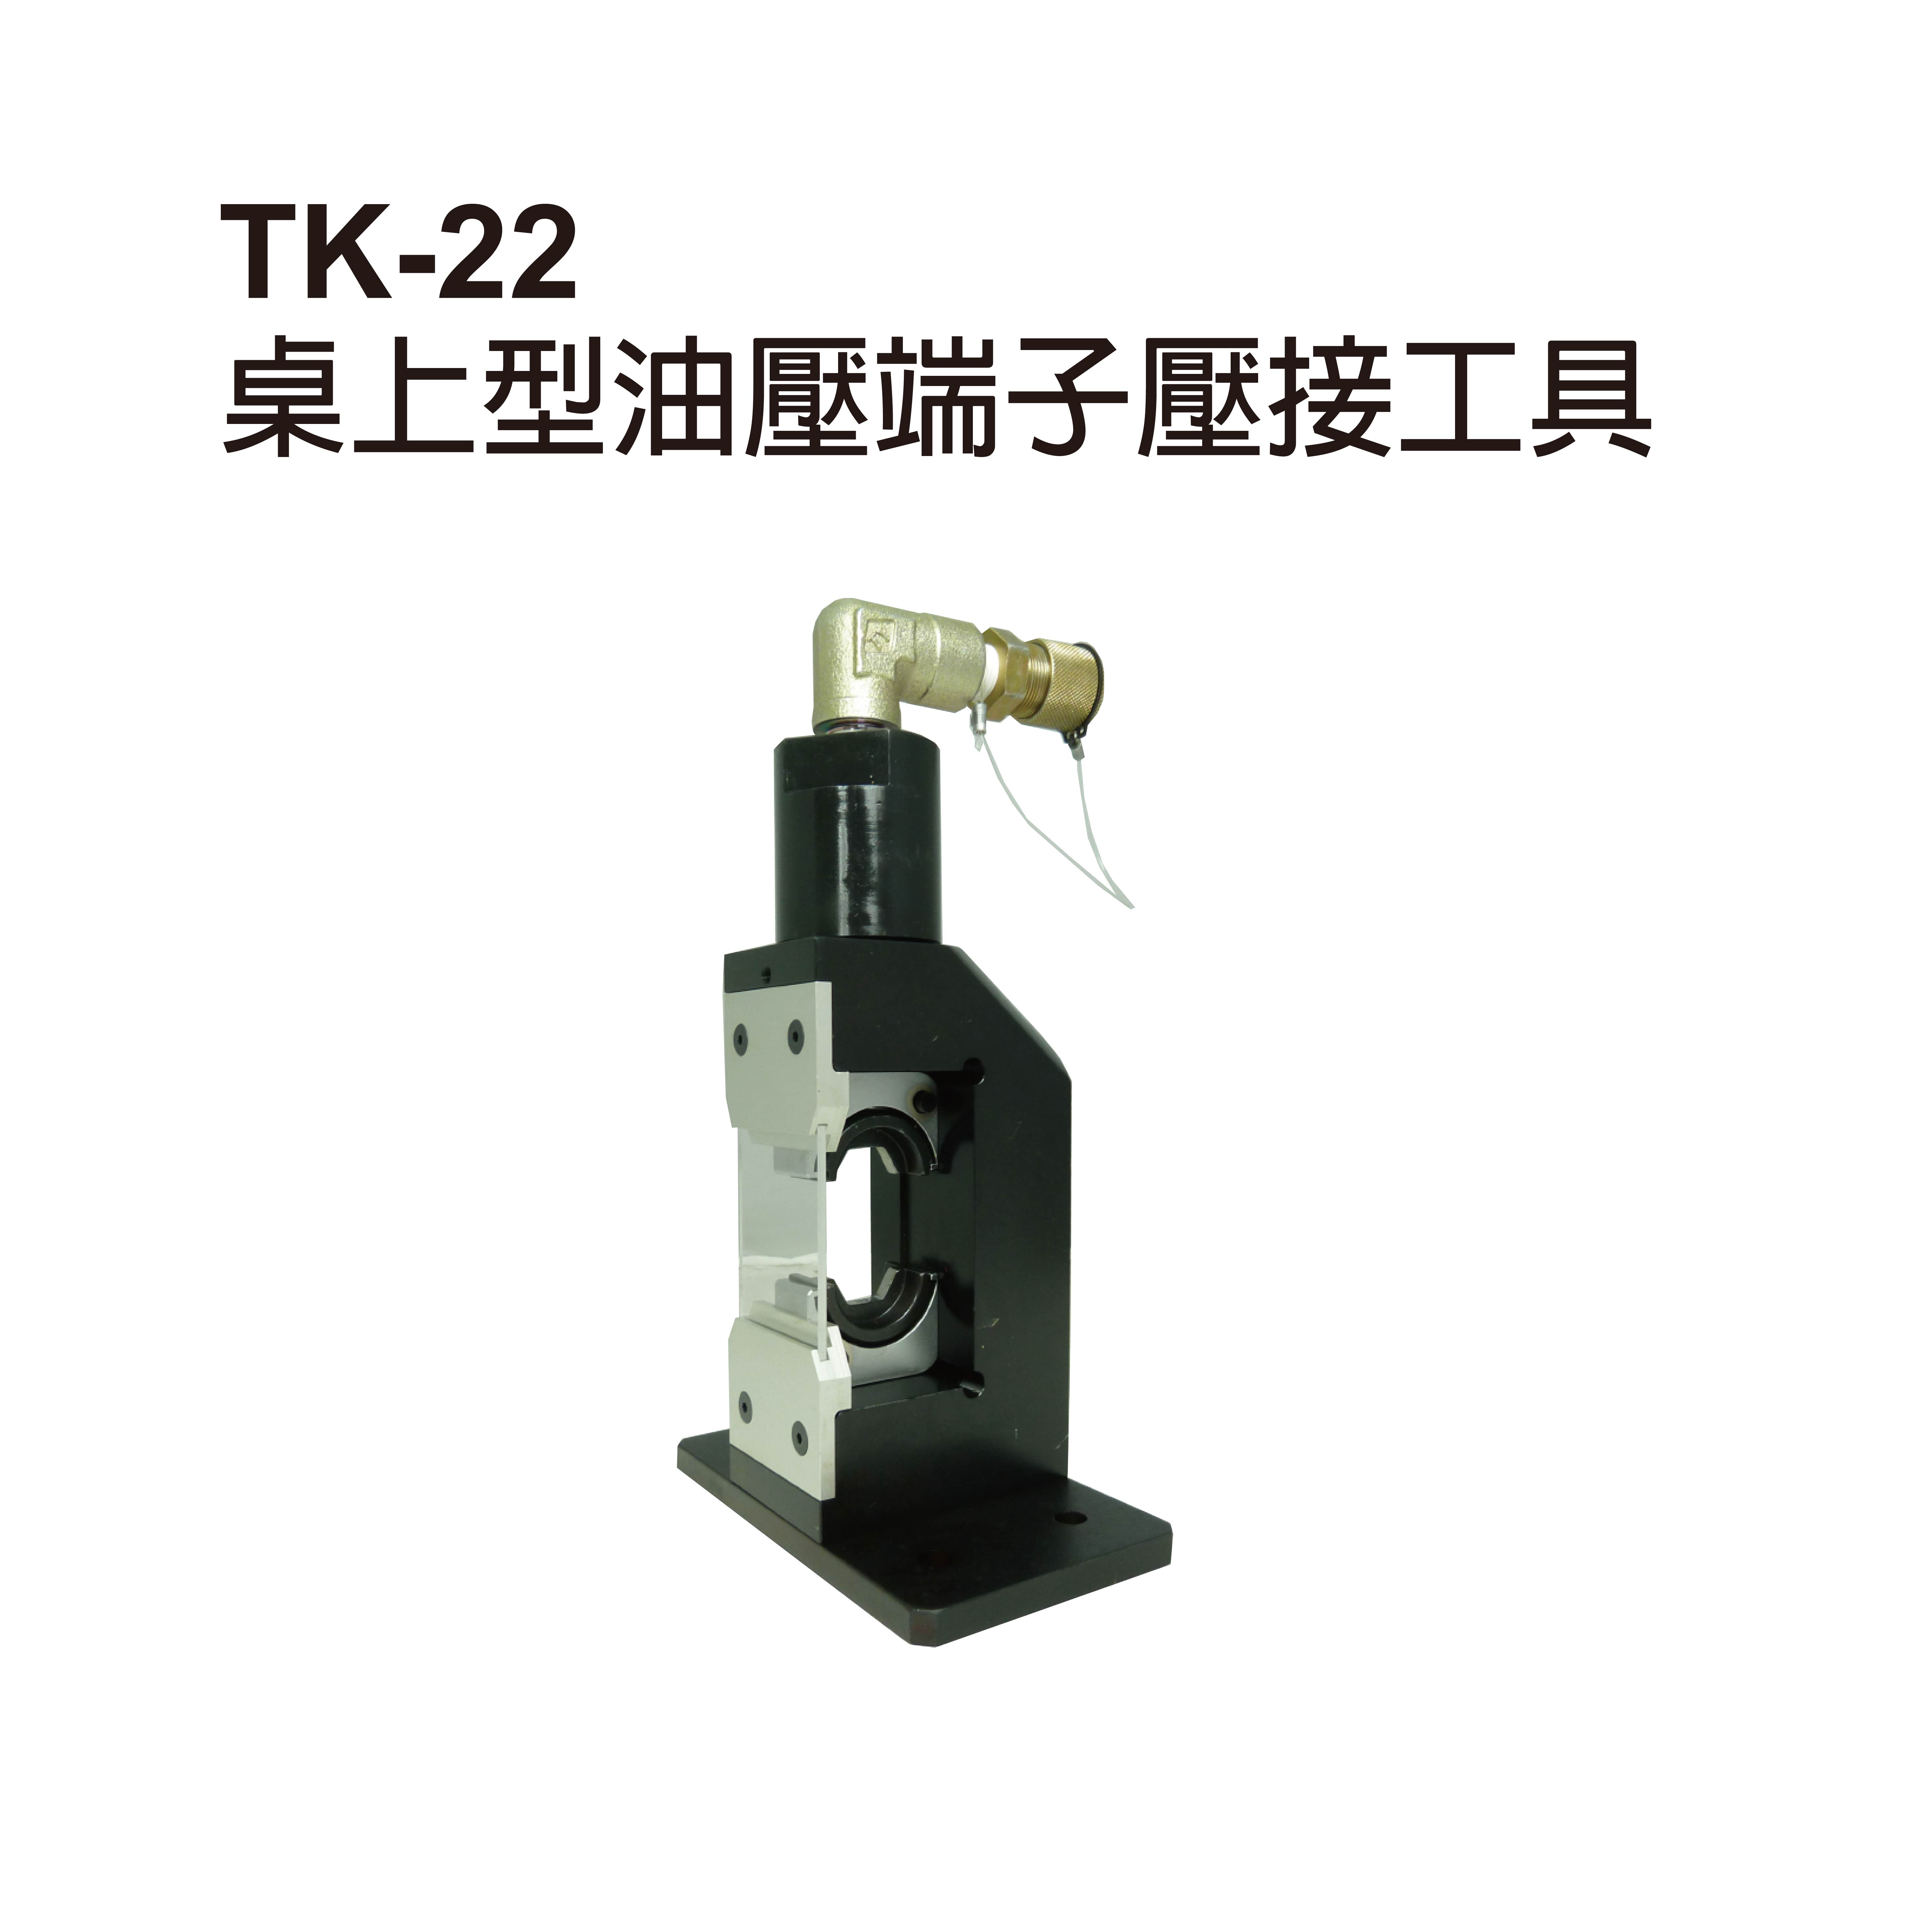 TK-22 REMOTE HYDRAULIC CRIMPING HEAD-TK-22